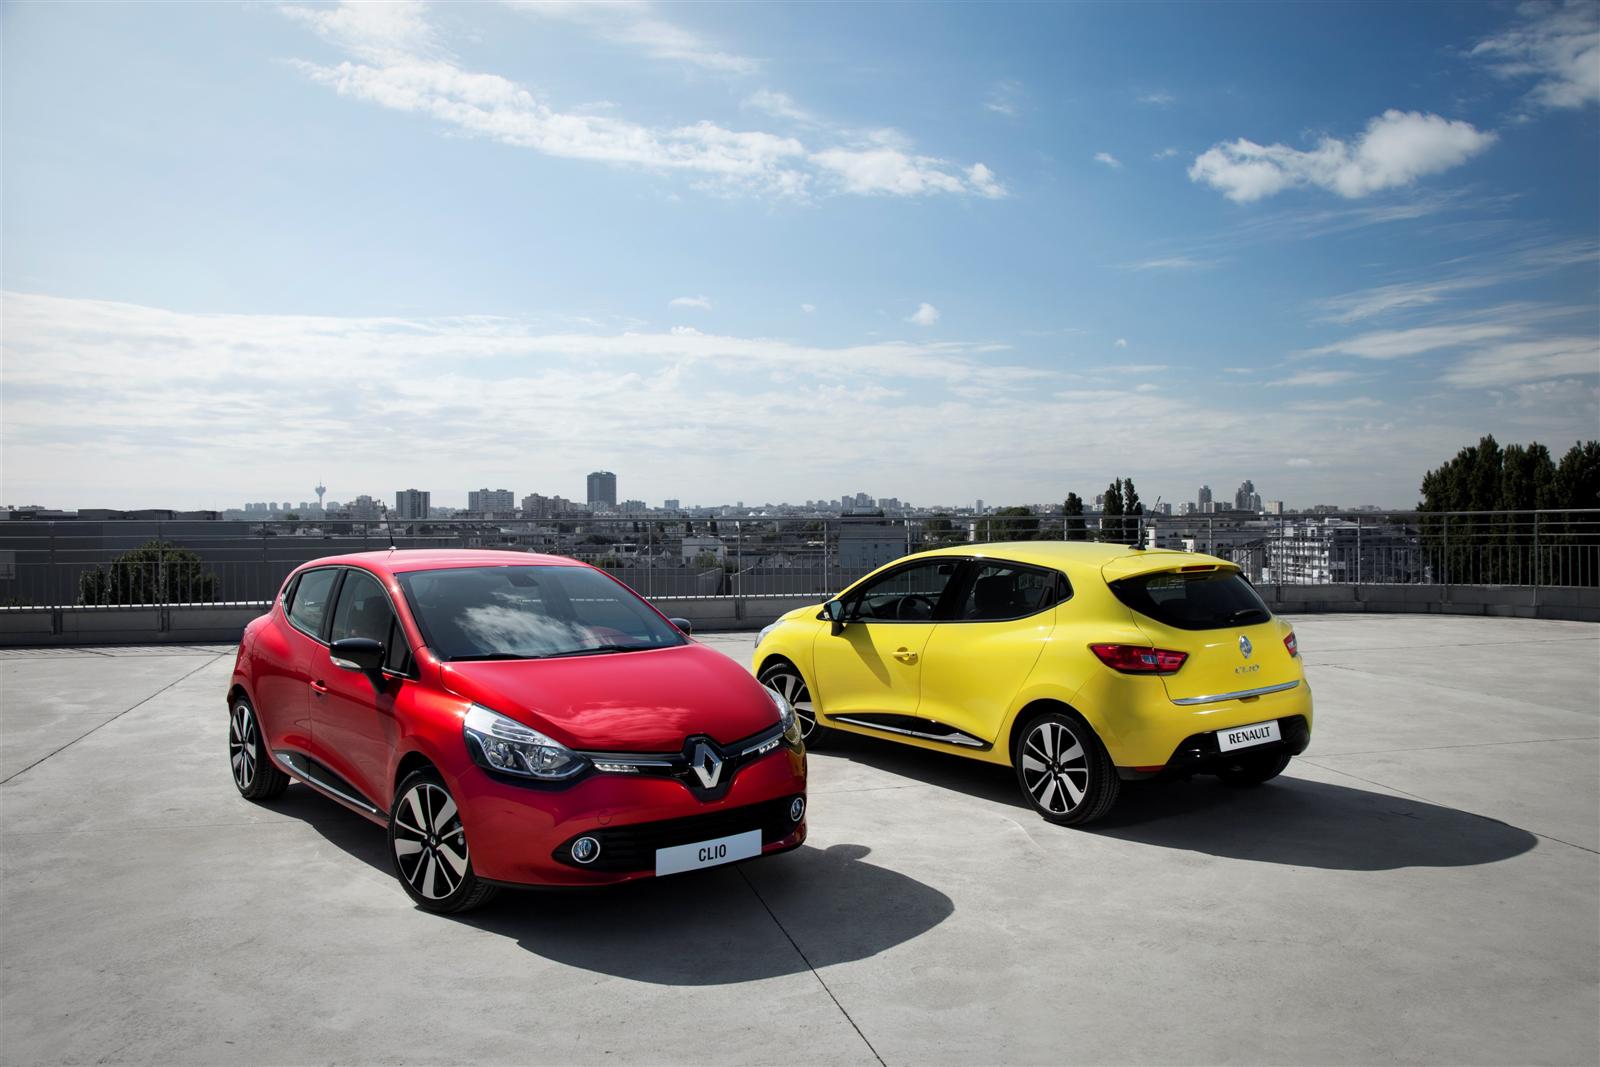 Renault Clio LPG gotowe na Euro gazeo.pl